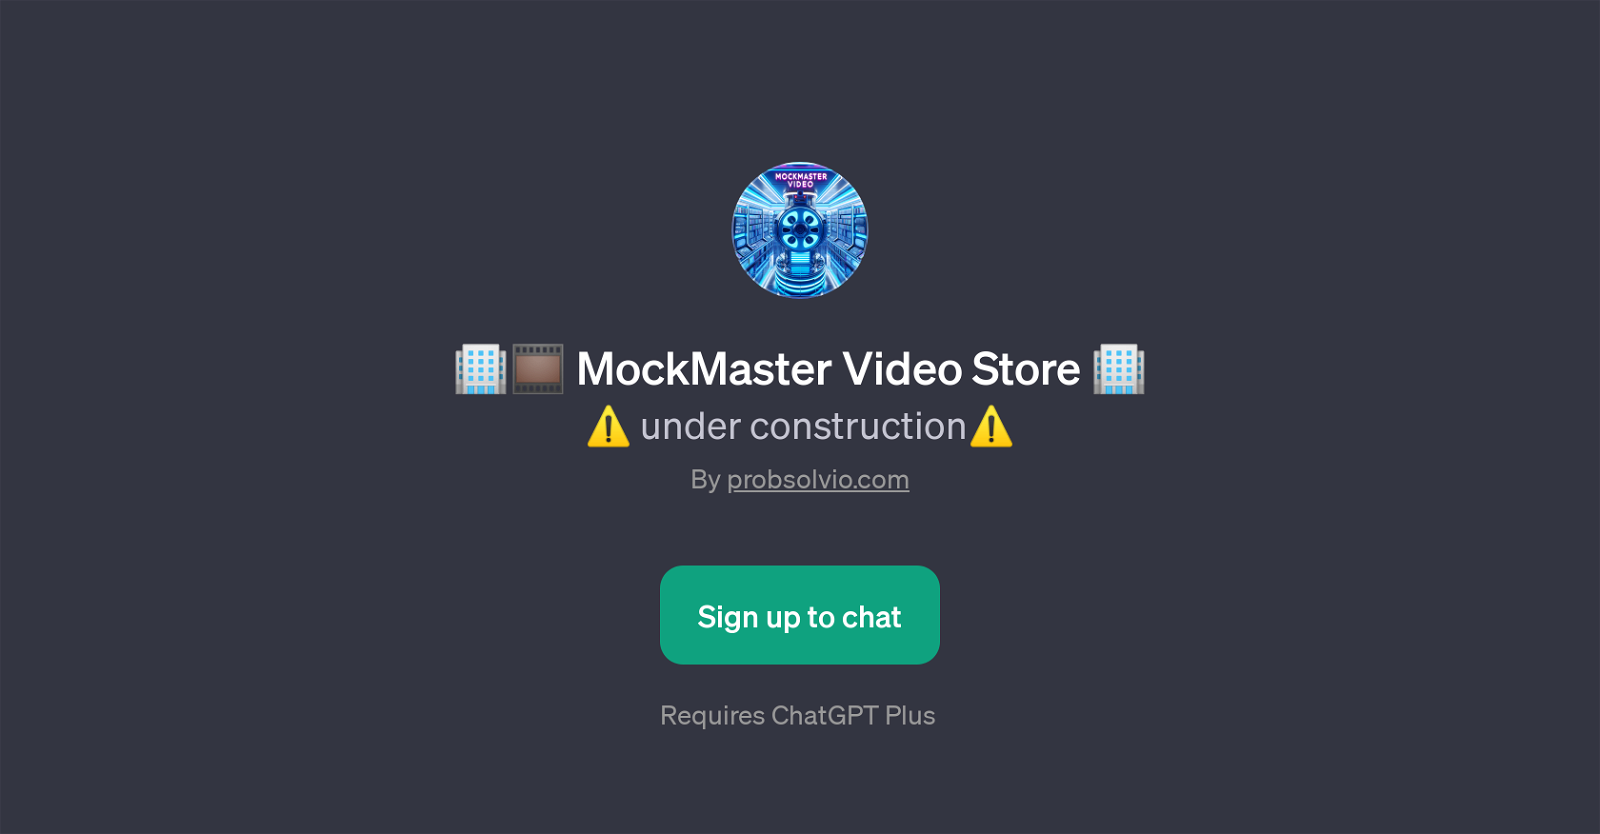 MockMaster Video Store website